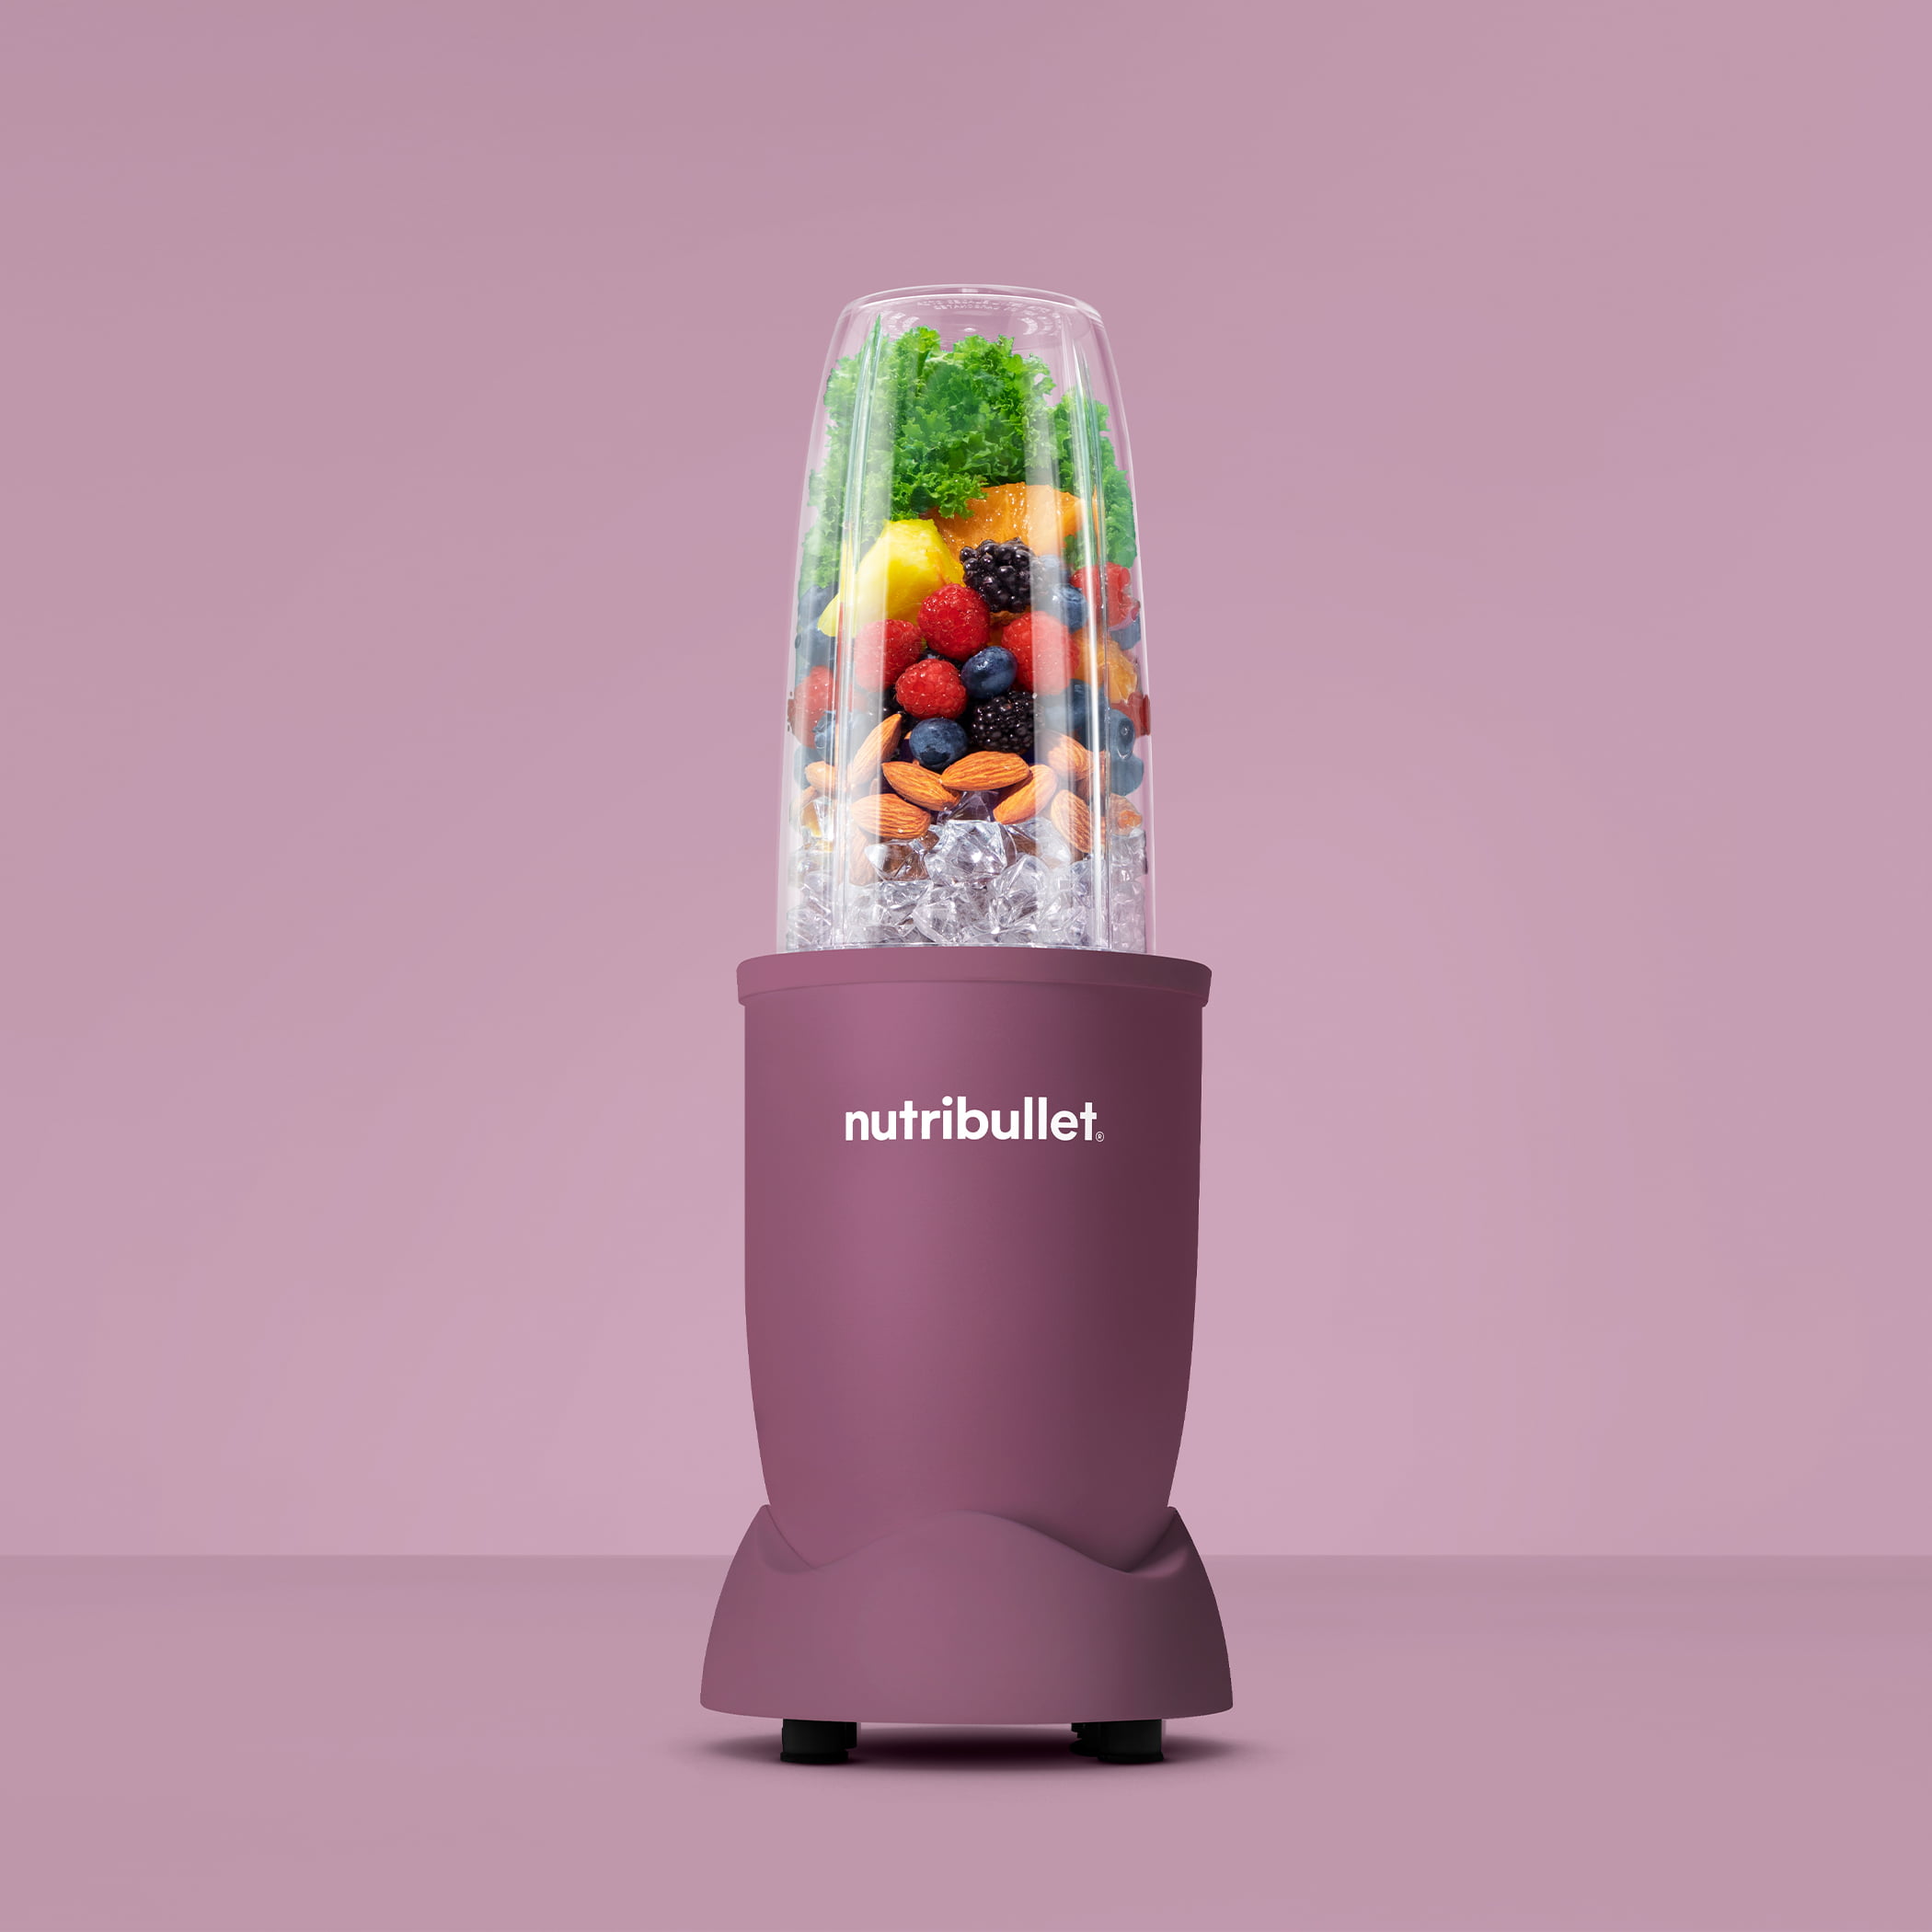 NutriBullet Pro 32 oz. Champagne Jar Blender with Plastic Jar NB9